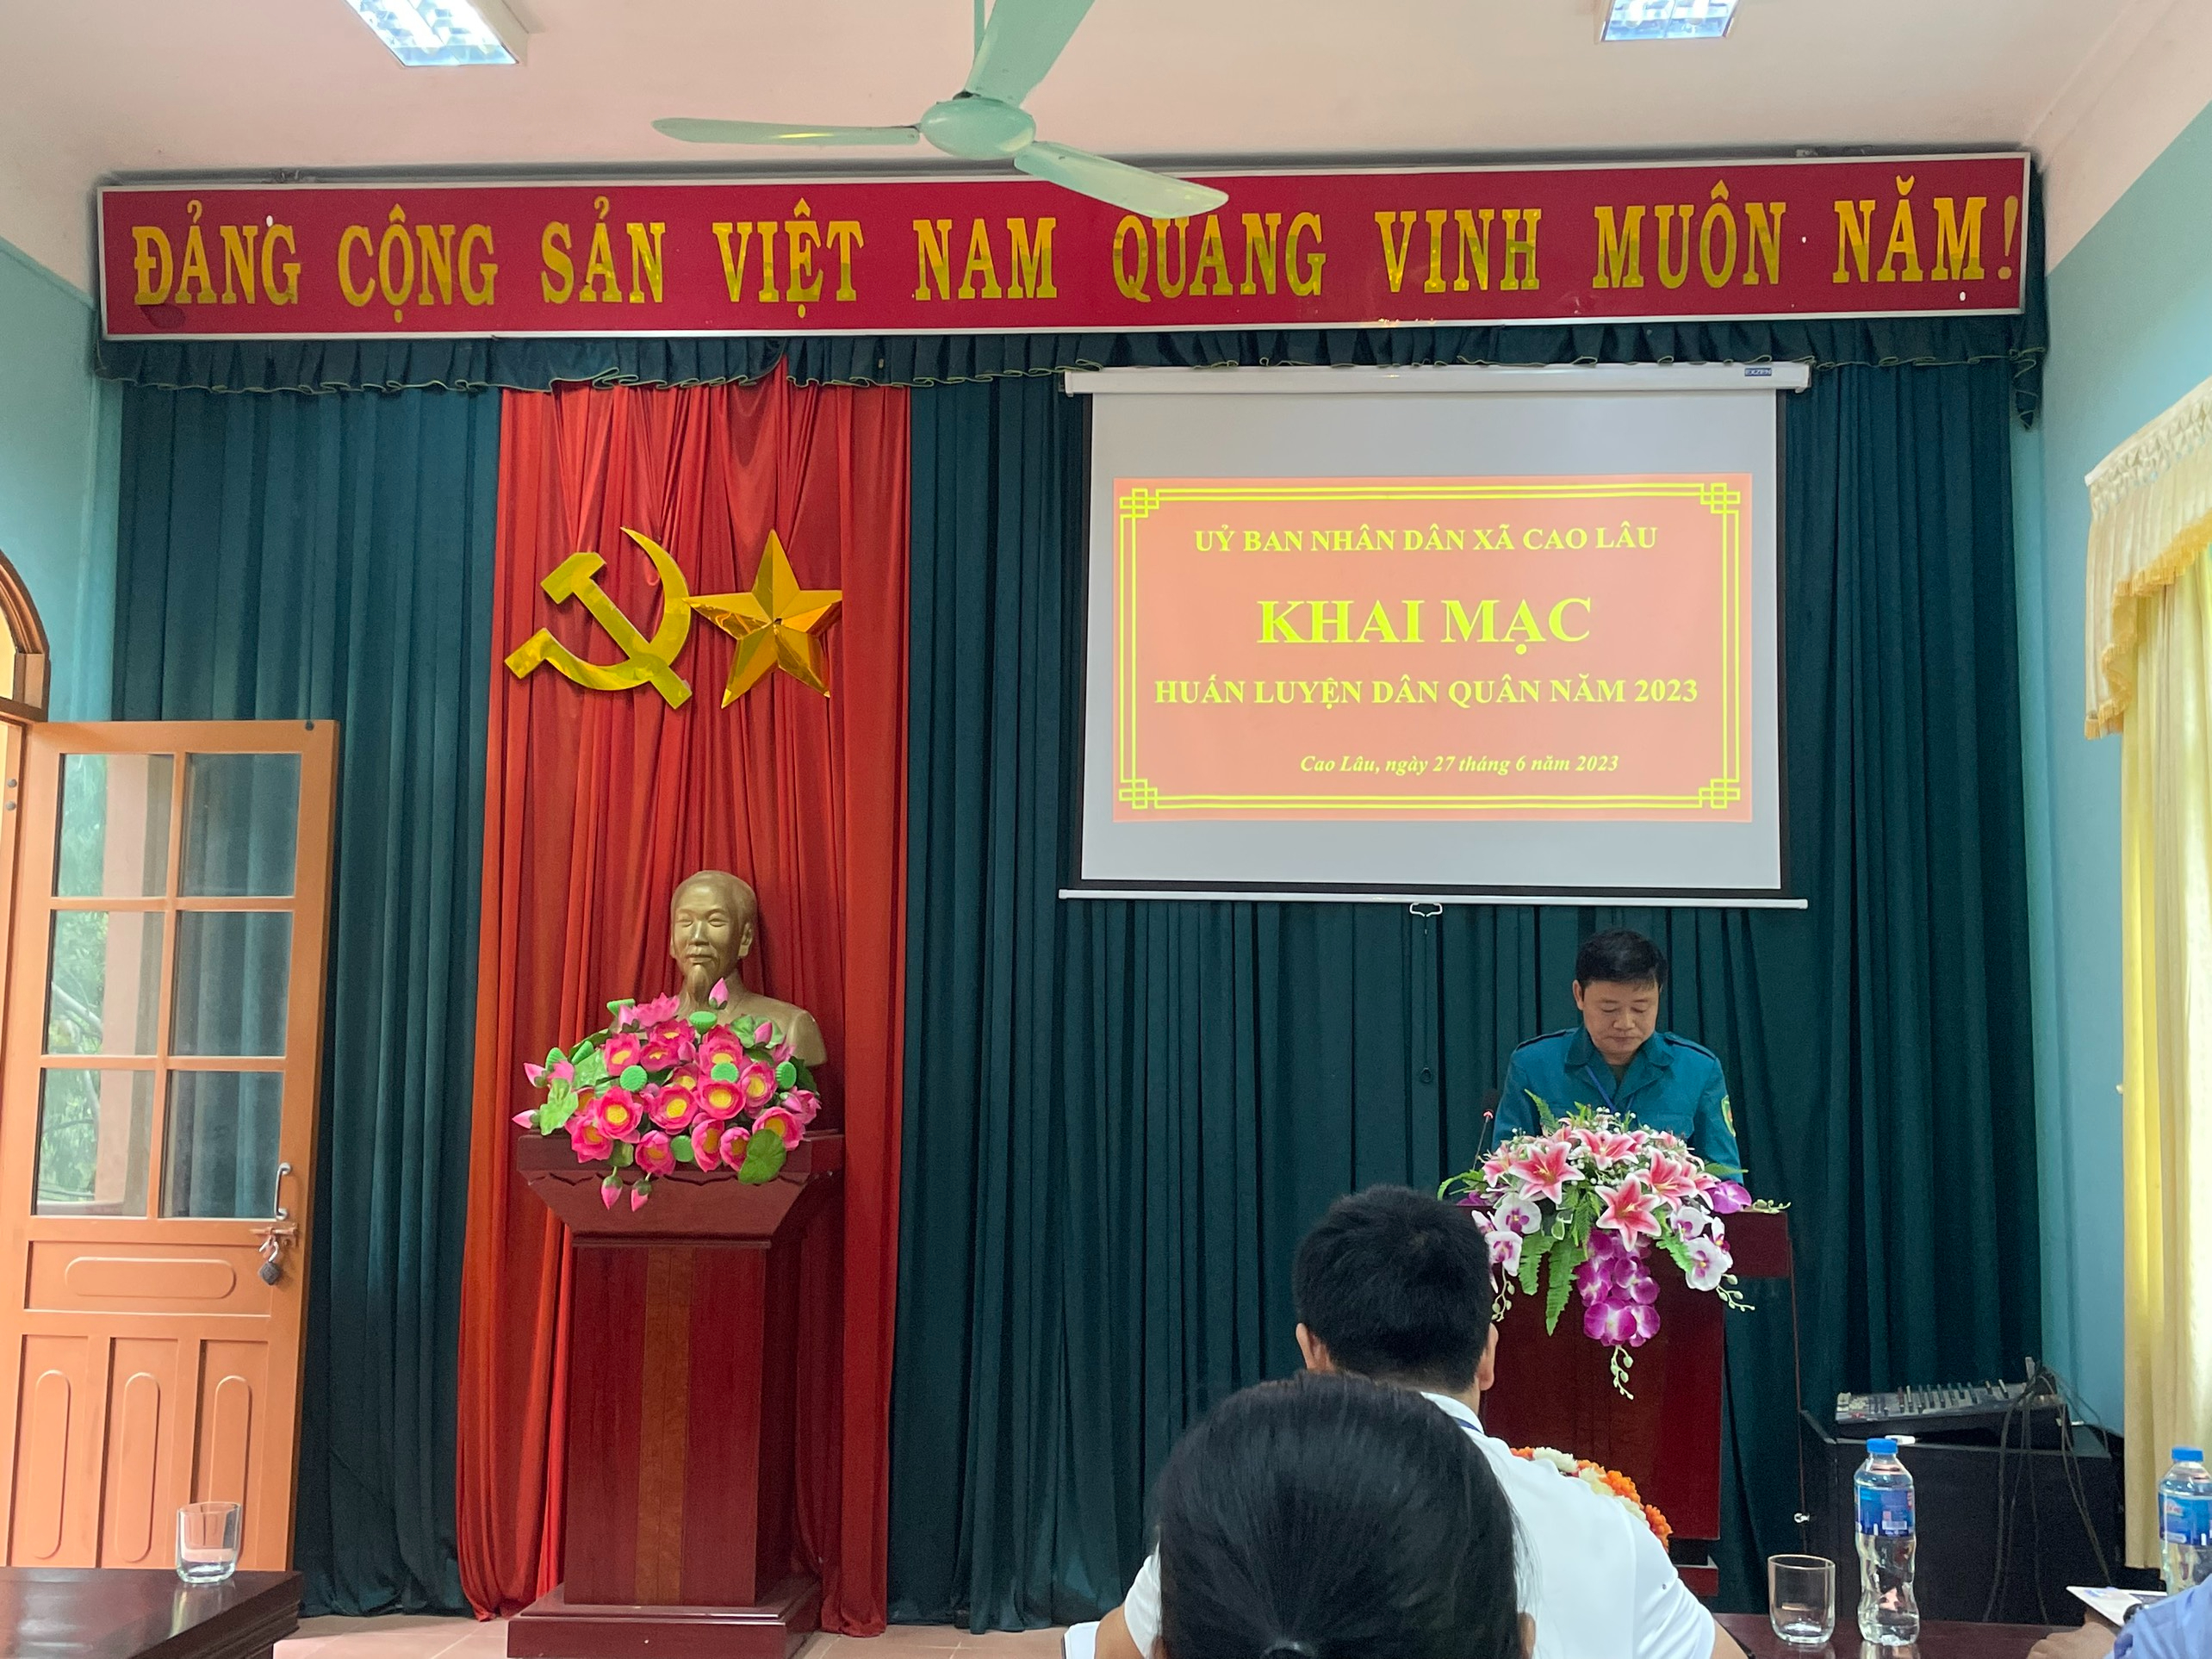 Đồng chí Lương Văn Lập – Chủ tịch Hội ND xã, kiêm Chỉ huy Trưởng BCH quân sự xã, phát biểu khai mạc huấn luyện dân quân tự vệ năm 2023.